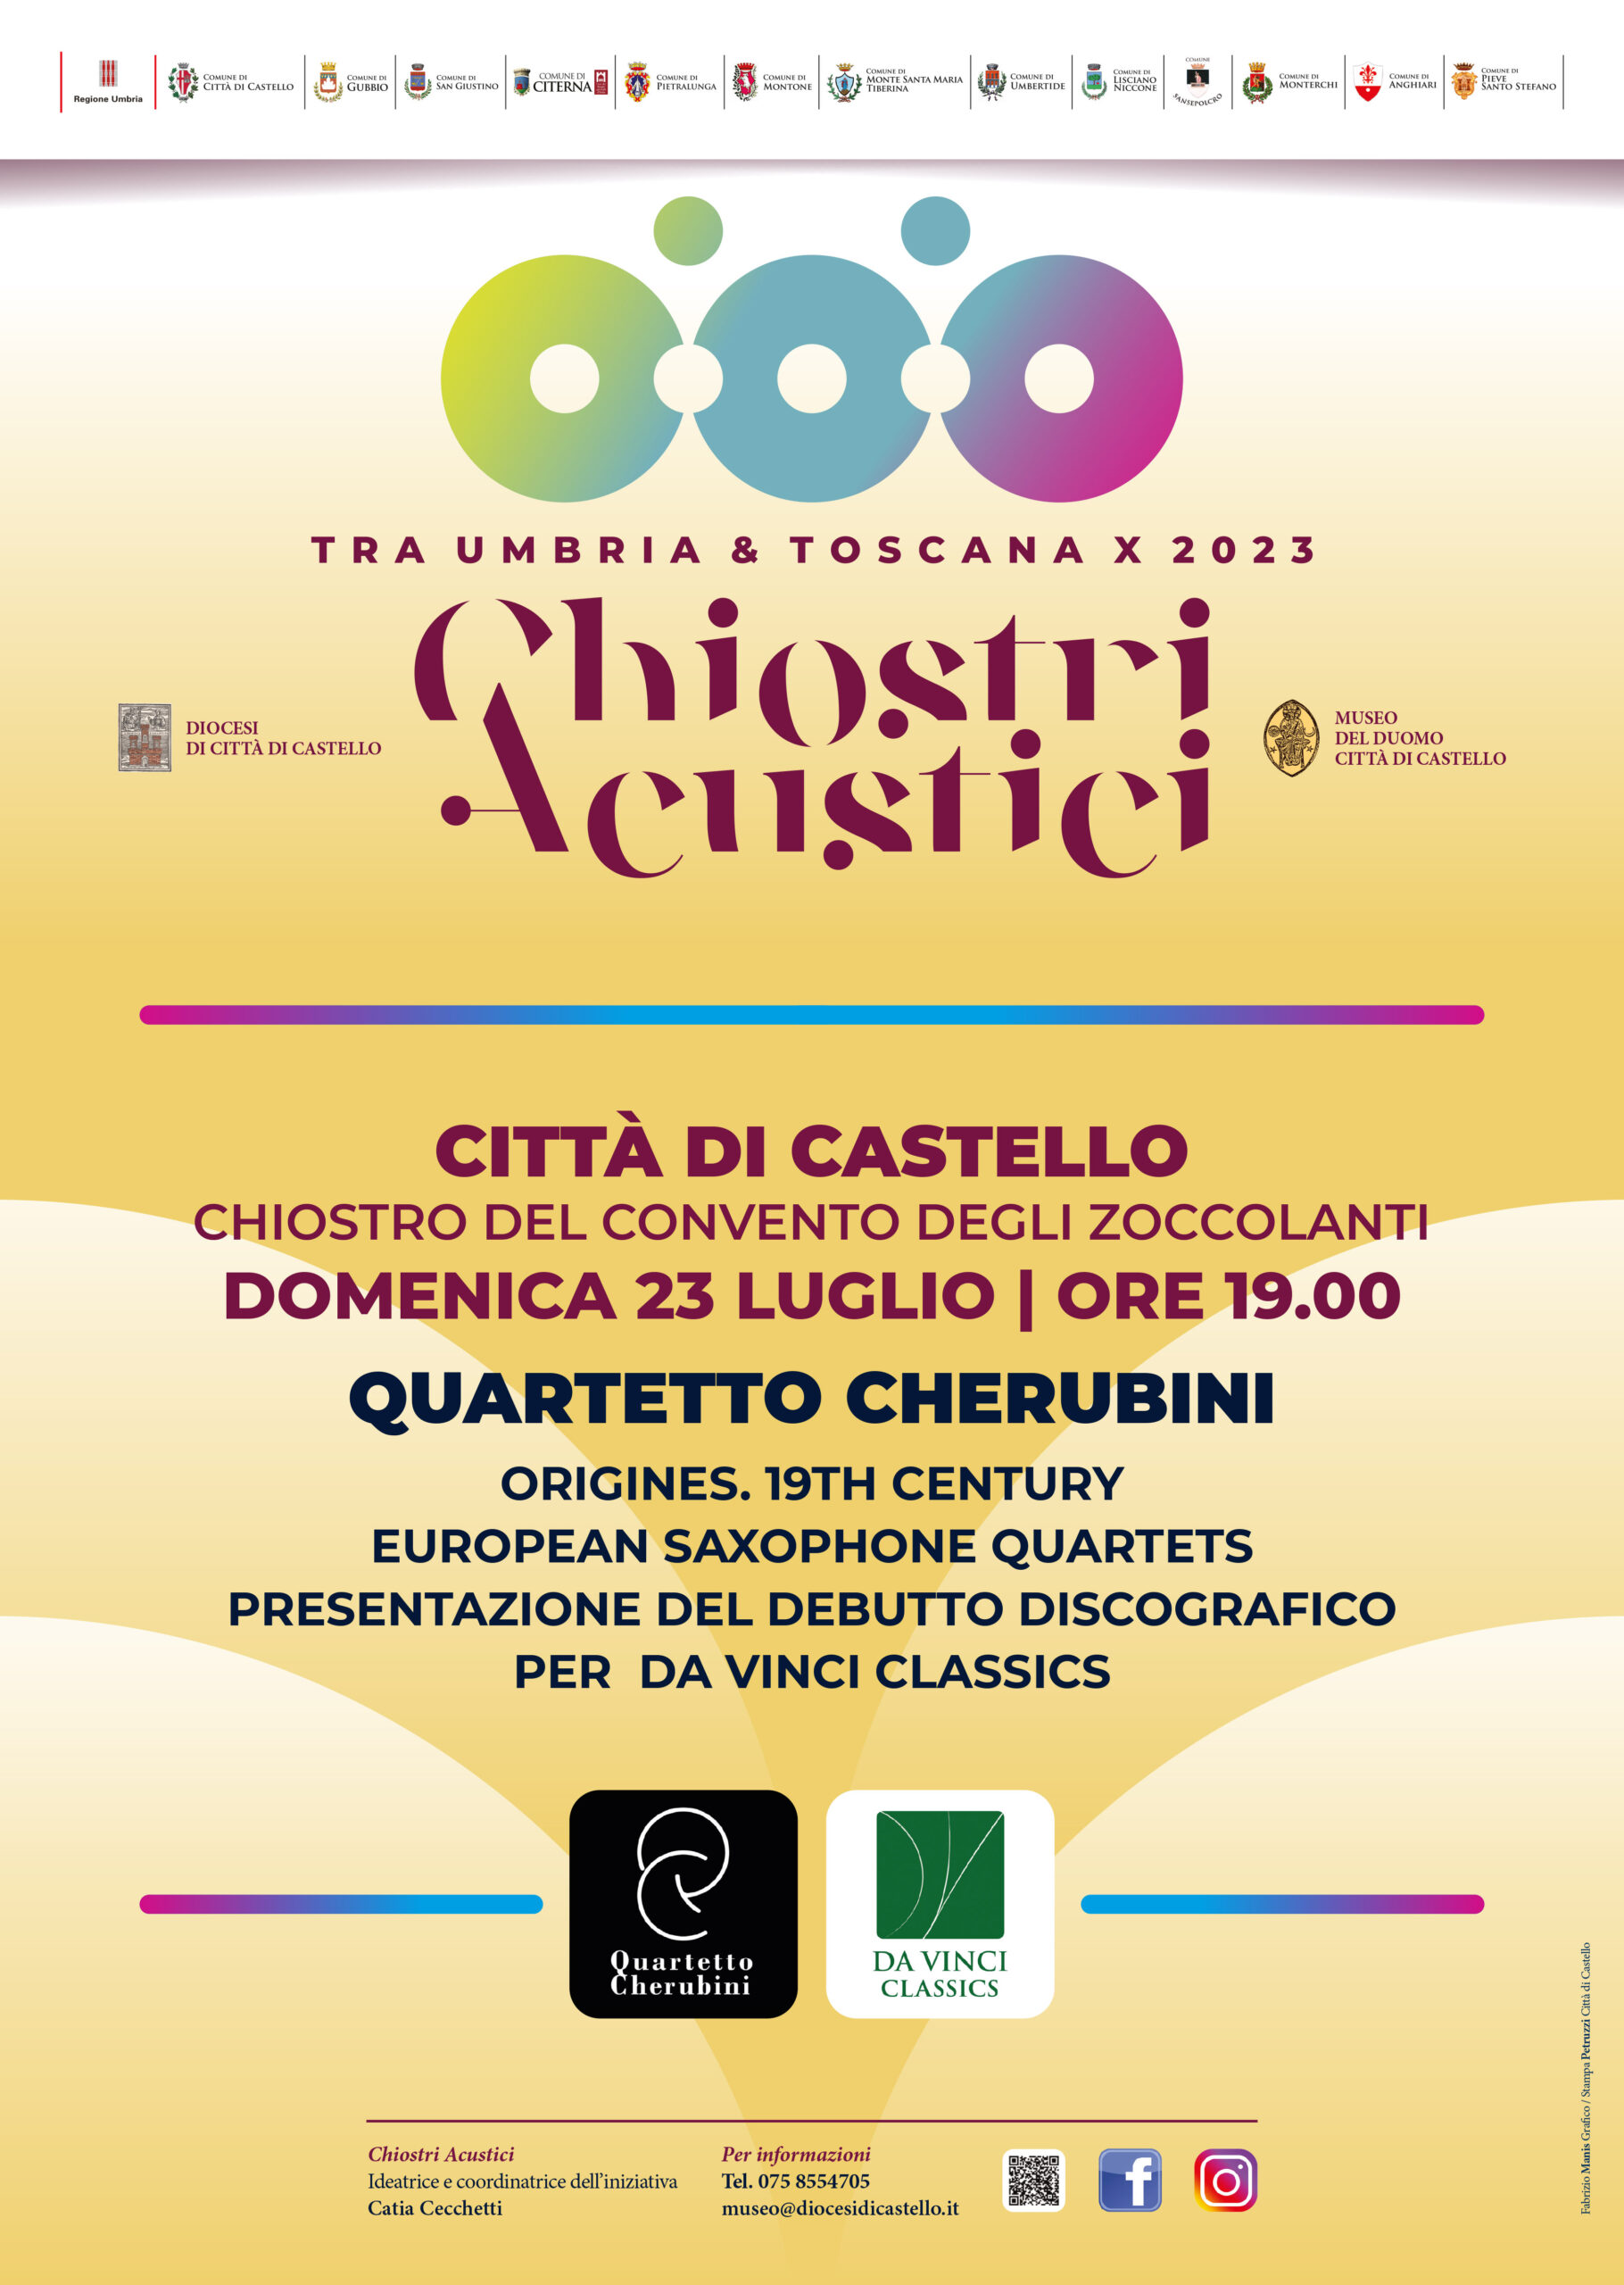 Quartetto Cherubini – Origines. 19th Century European Saxophone Quartets